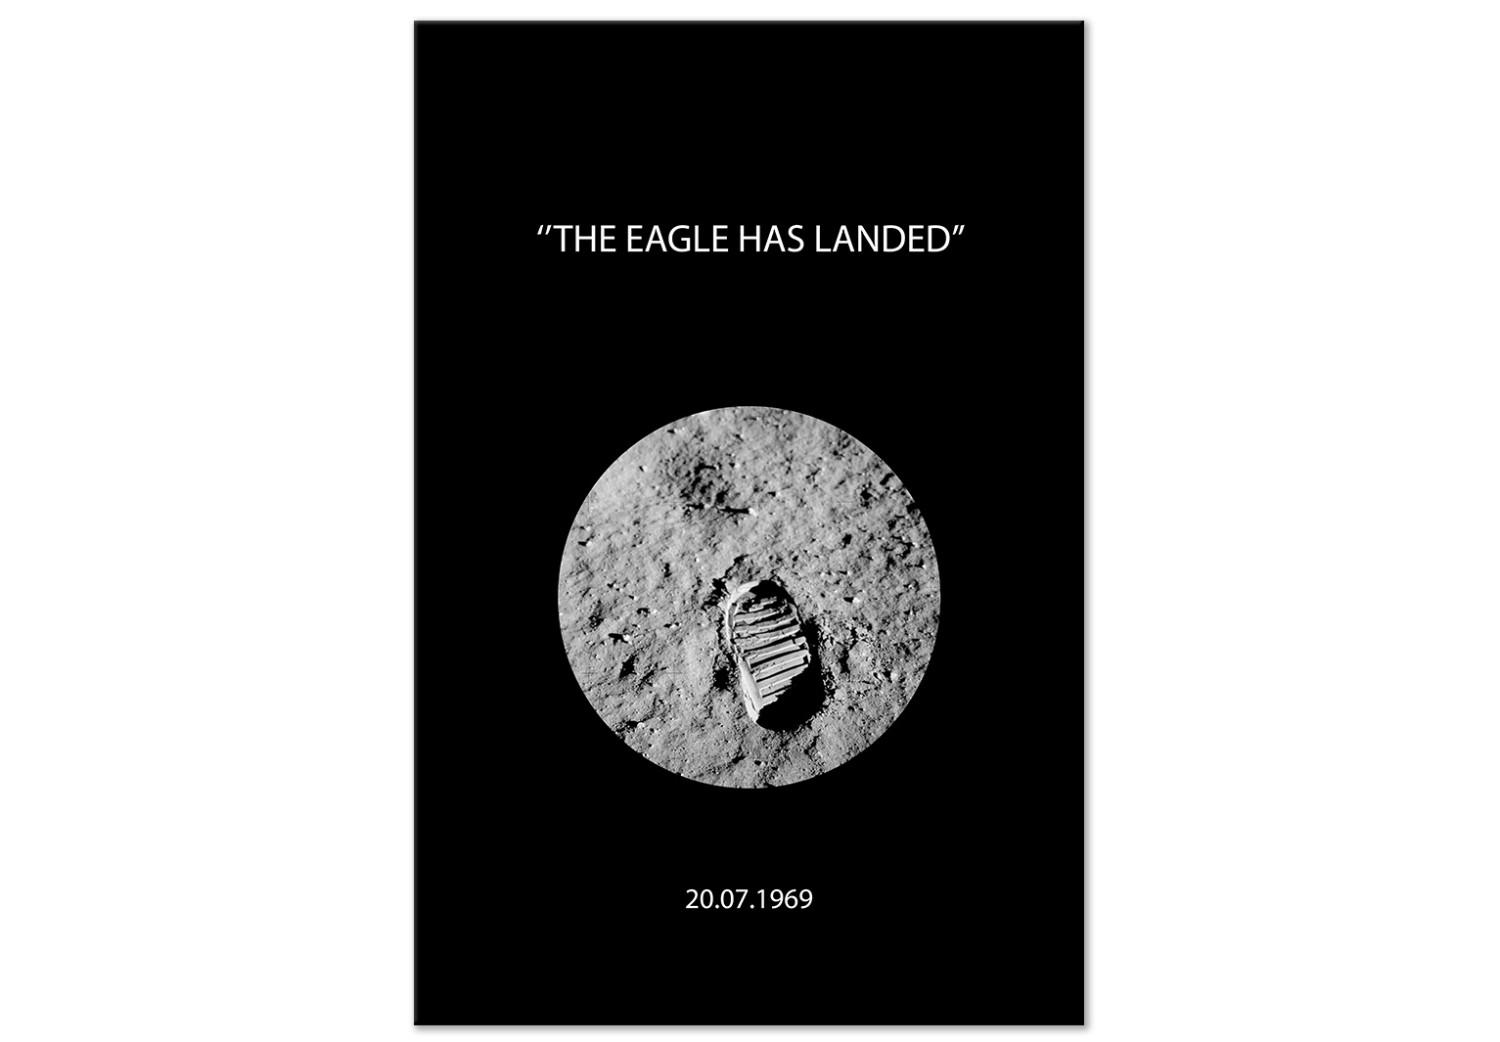 Cuadro moderno Huella de zapato en la luna - fotografía de luna con frase en inglés